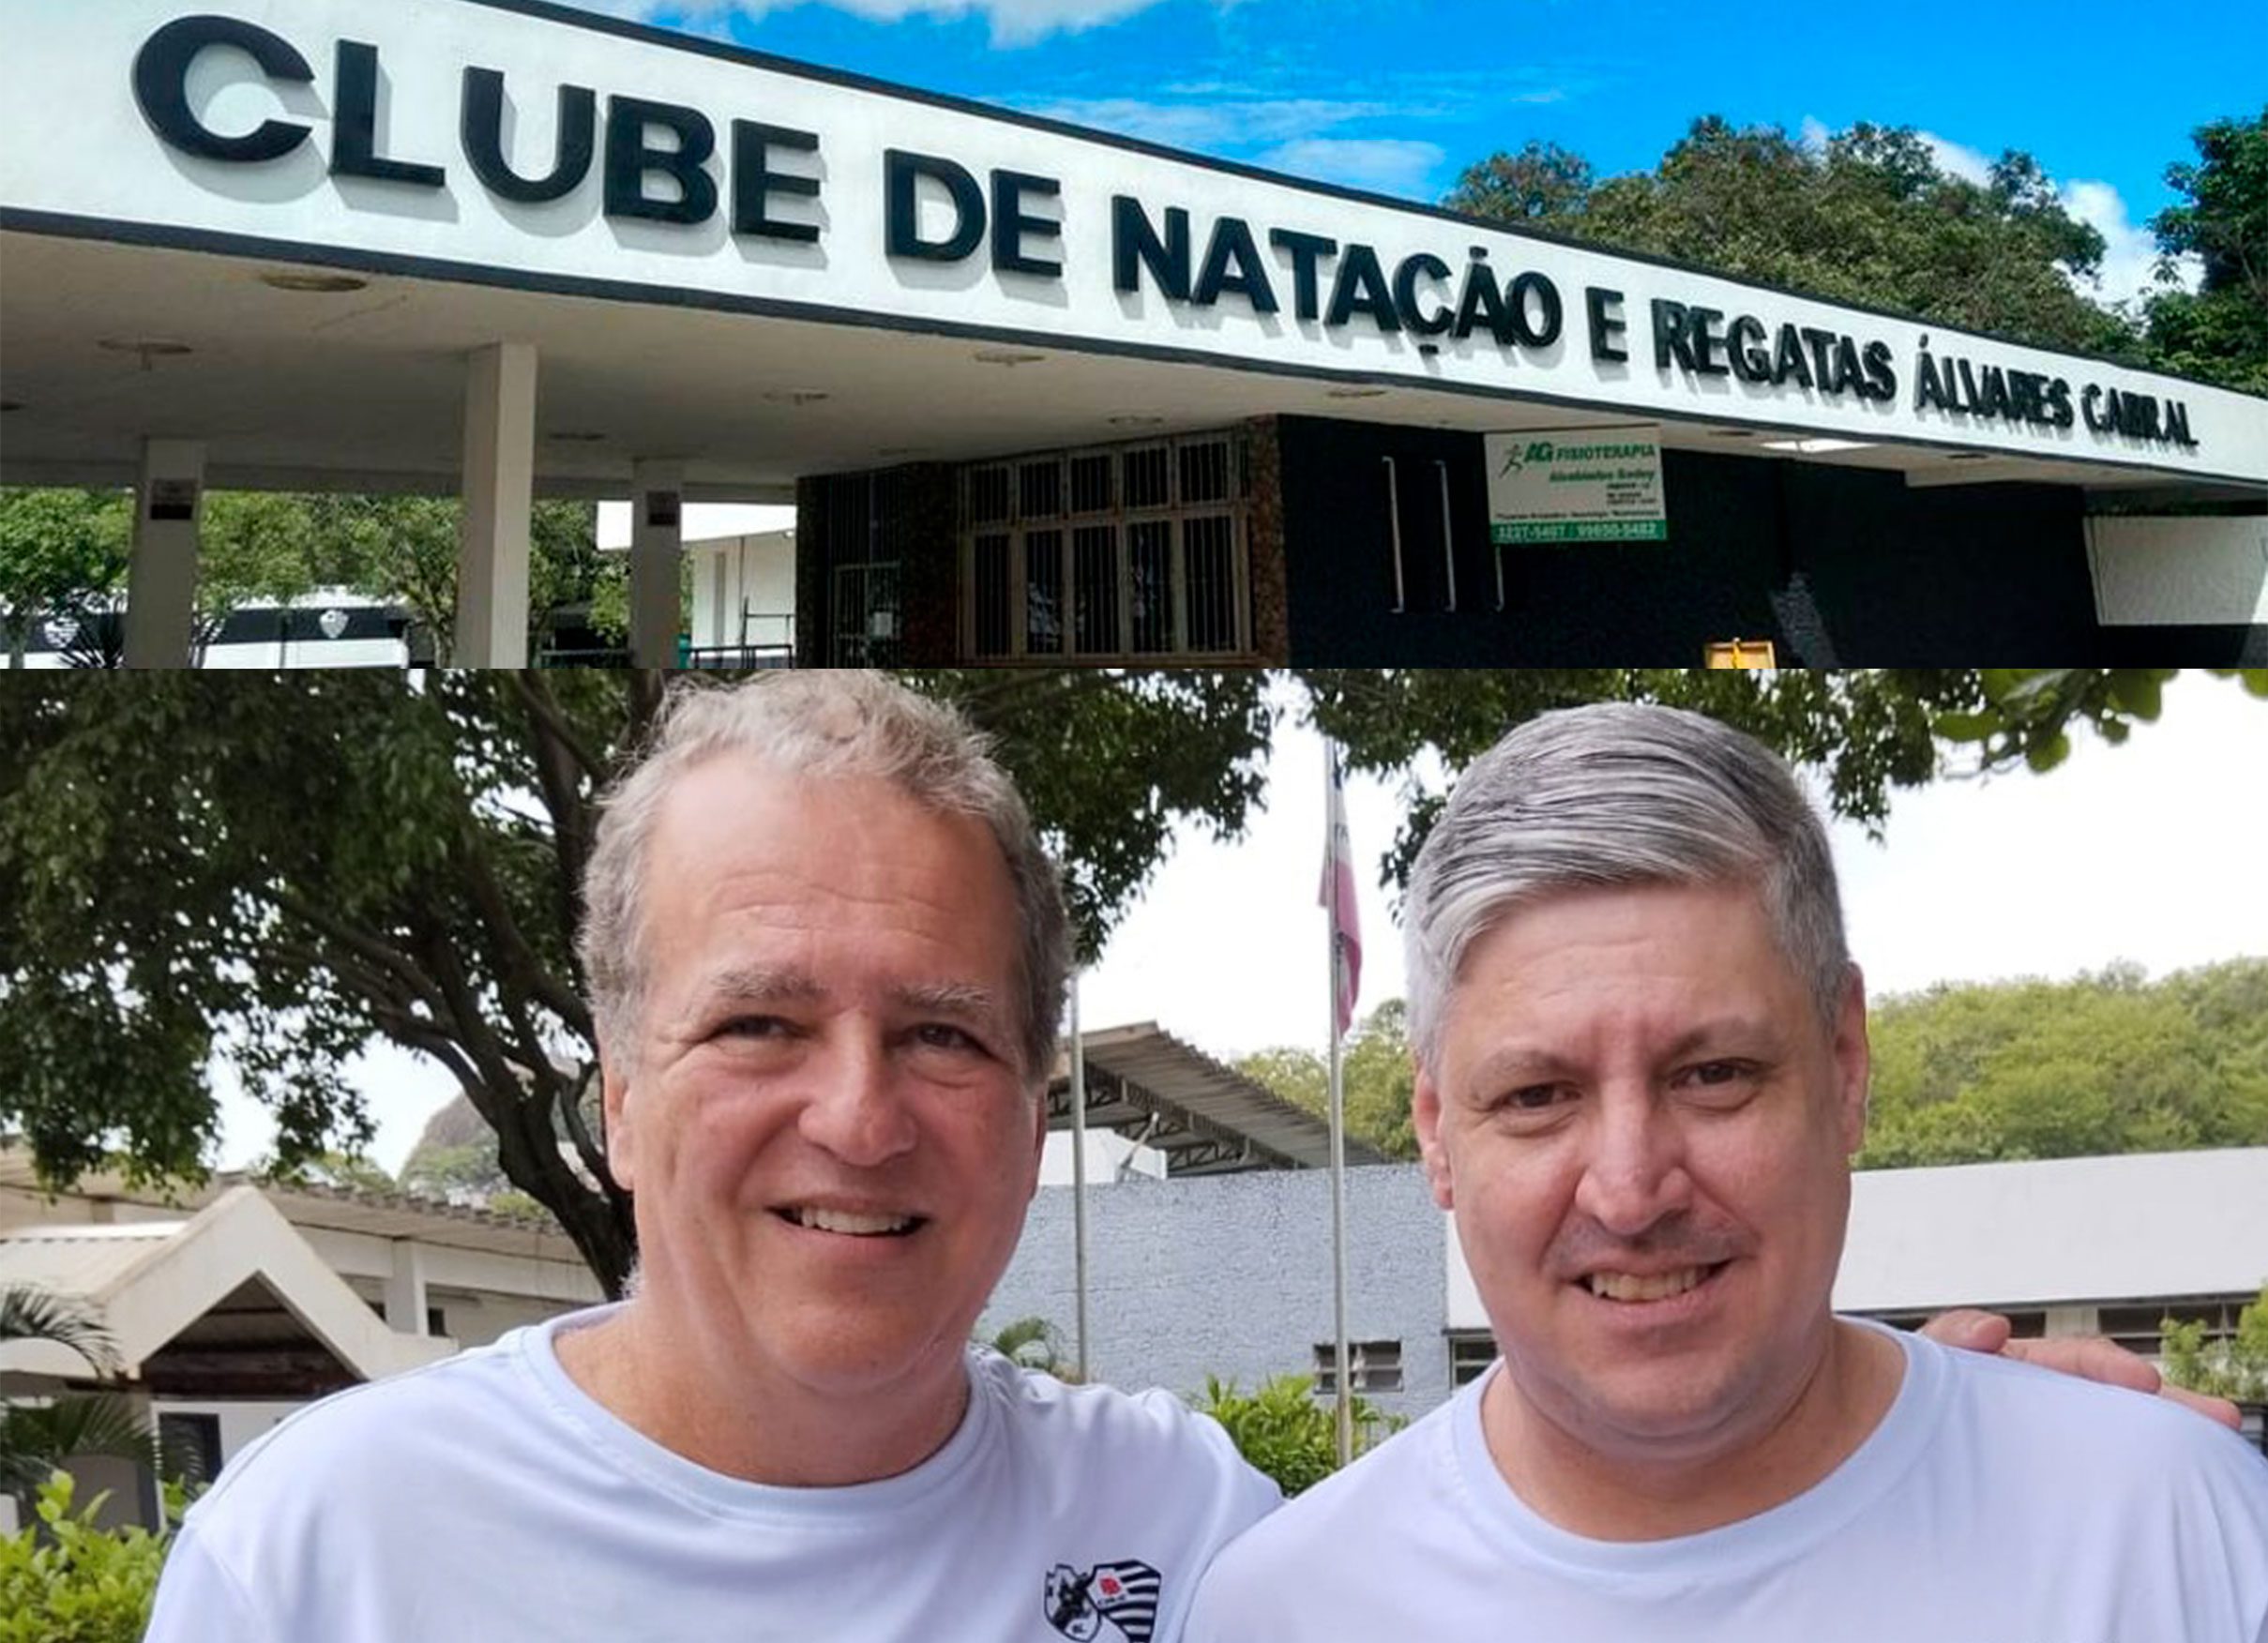 Clube de Natação e Regatas Álvares Cabral Elege Nova Diretoria e Relembra Sua Trajetória